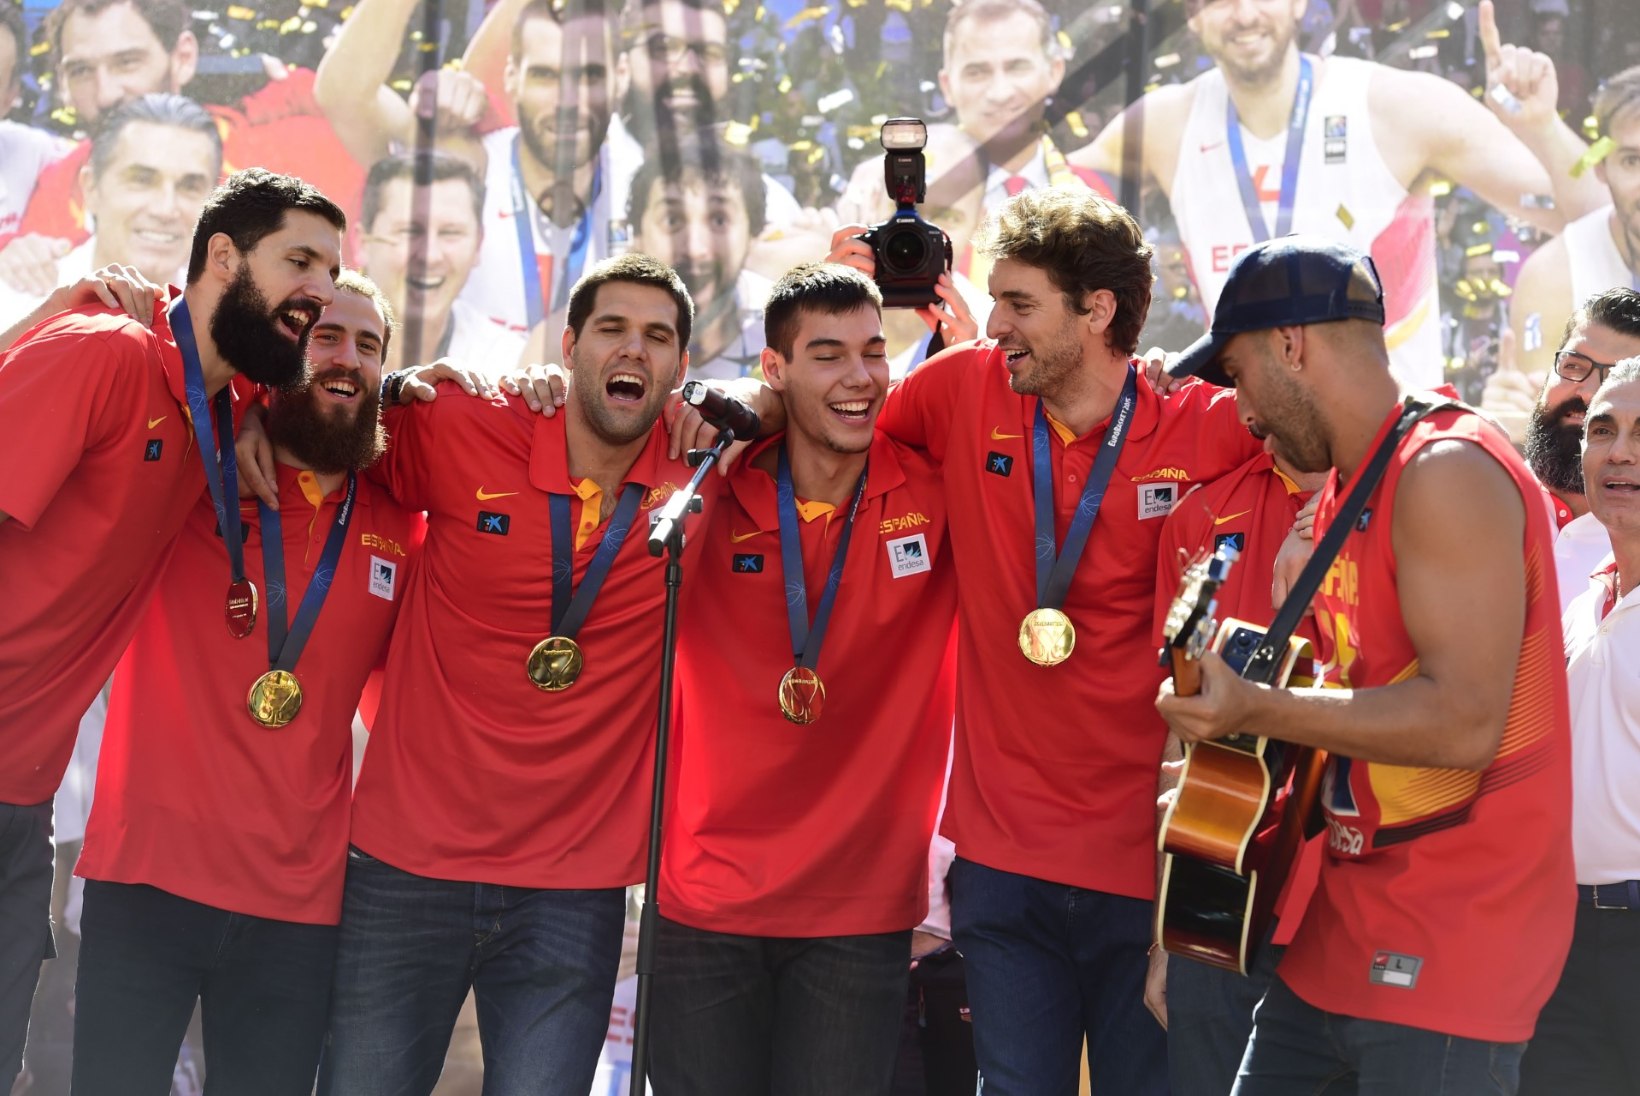 Tehke järele: Hispaania kossukoondise 10 medalit 15 aastaga!